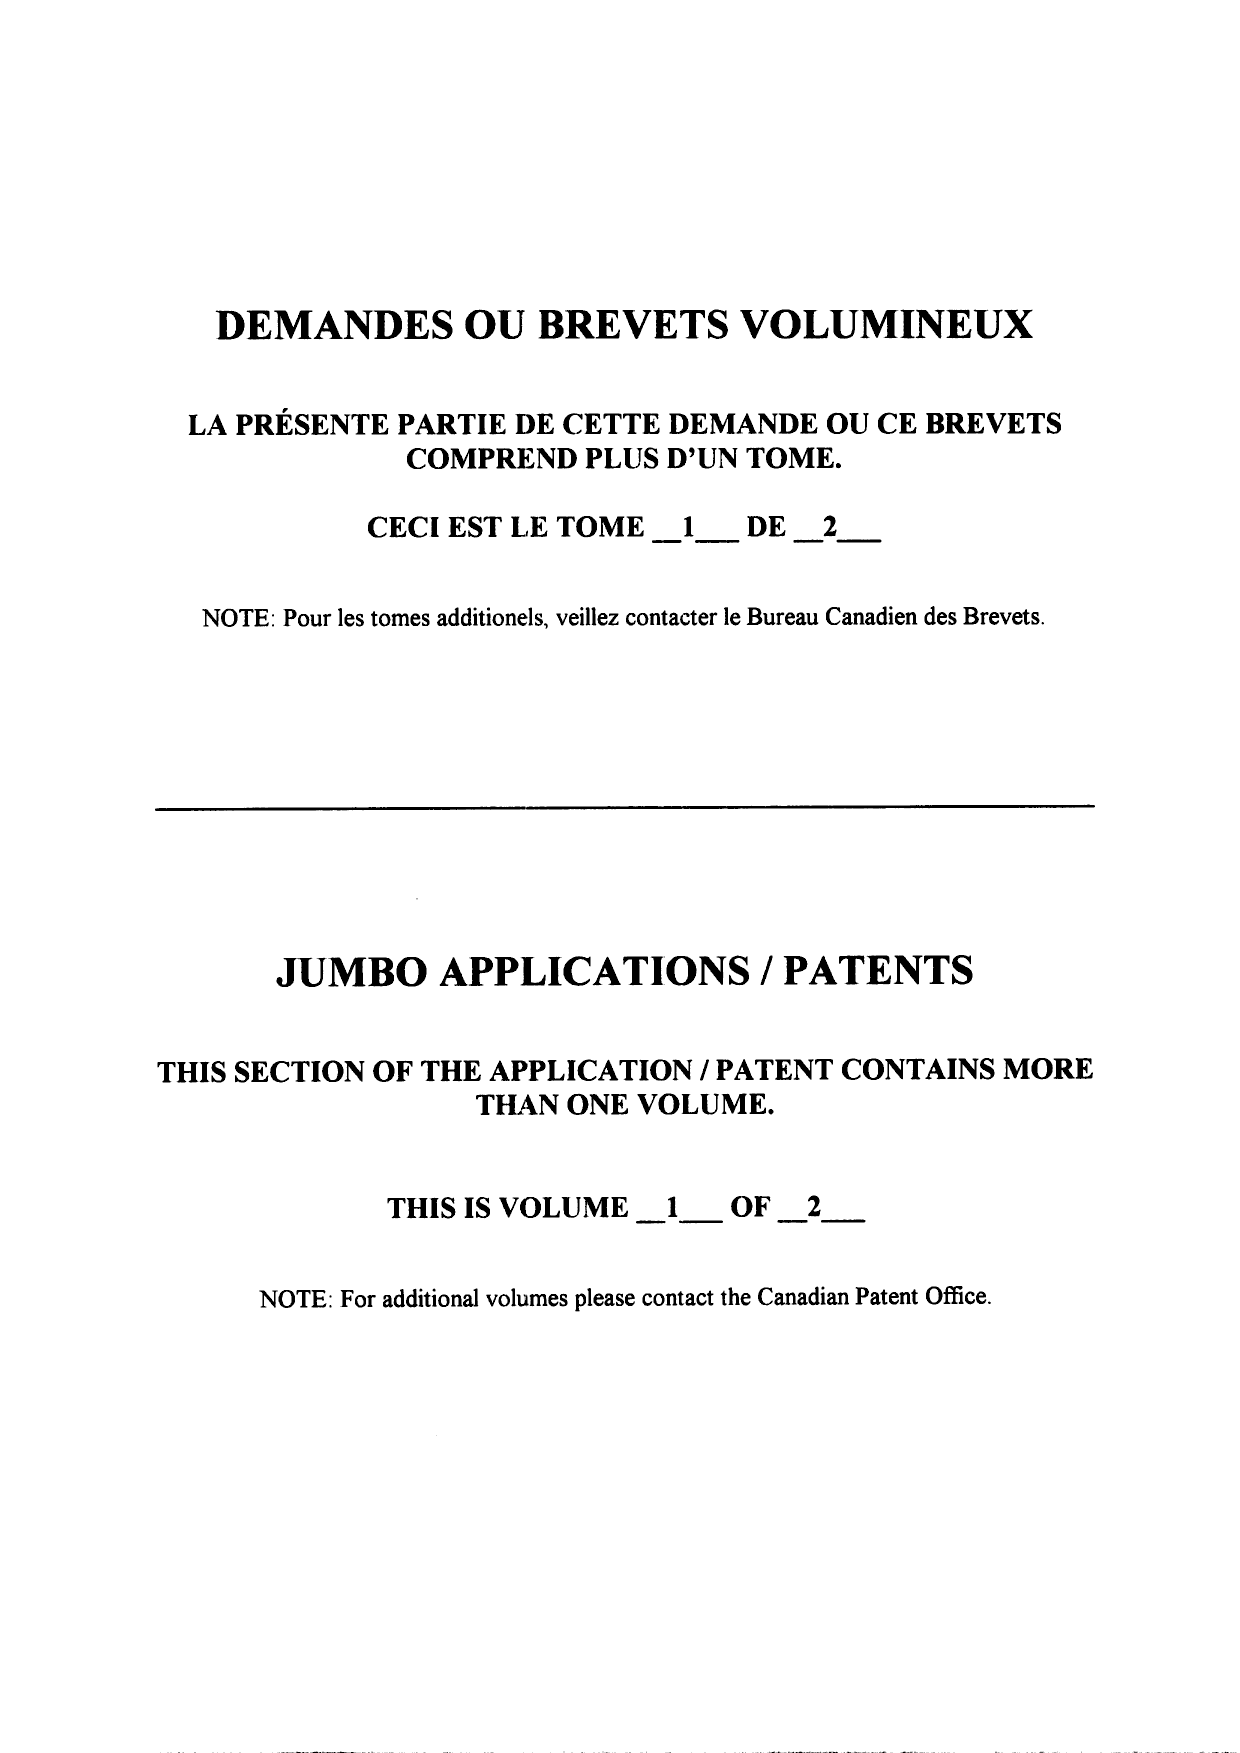 Canadian Patent Document 2515484. Description 20091222. Image 107 of 107